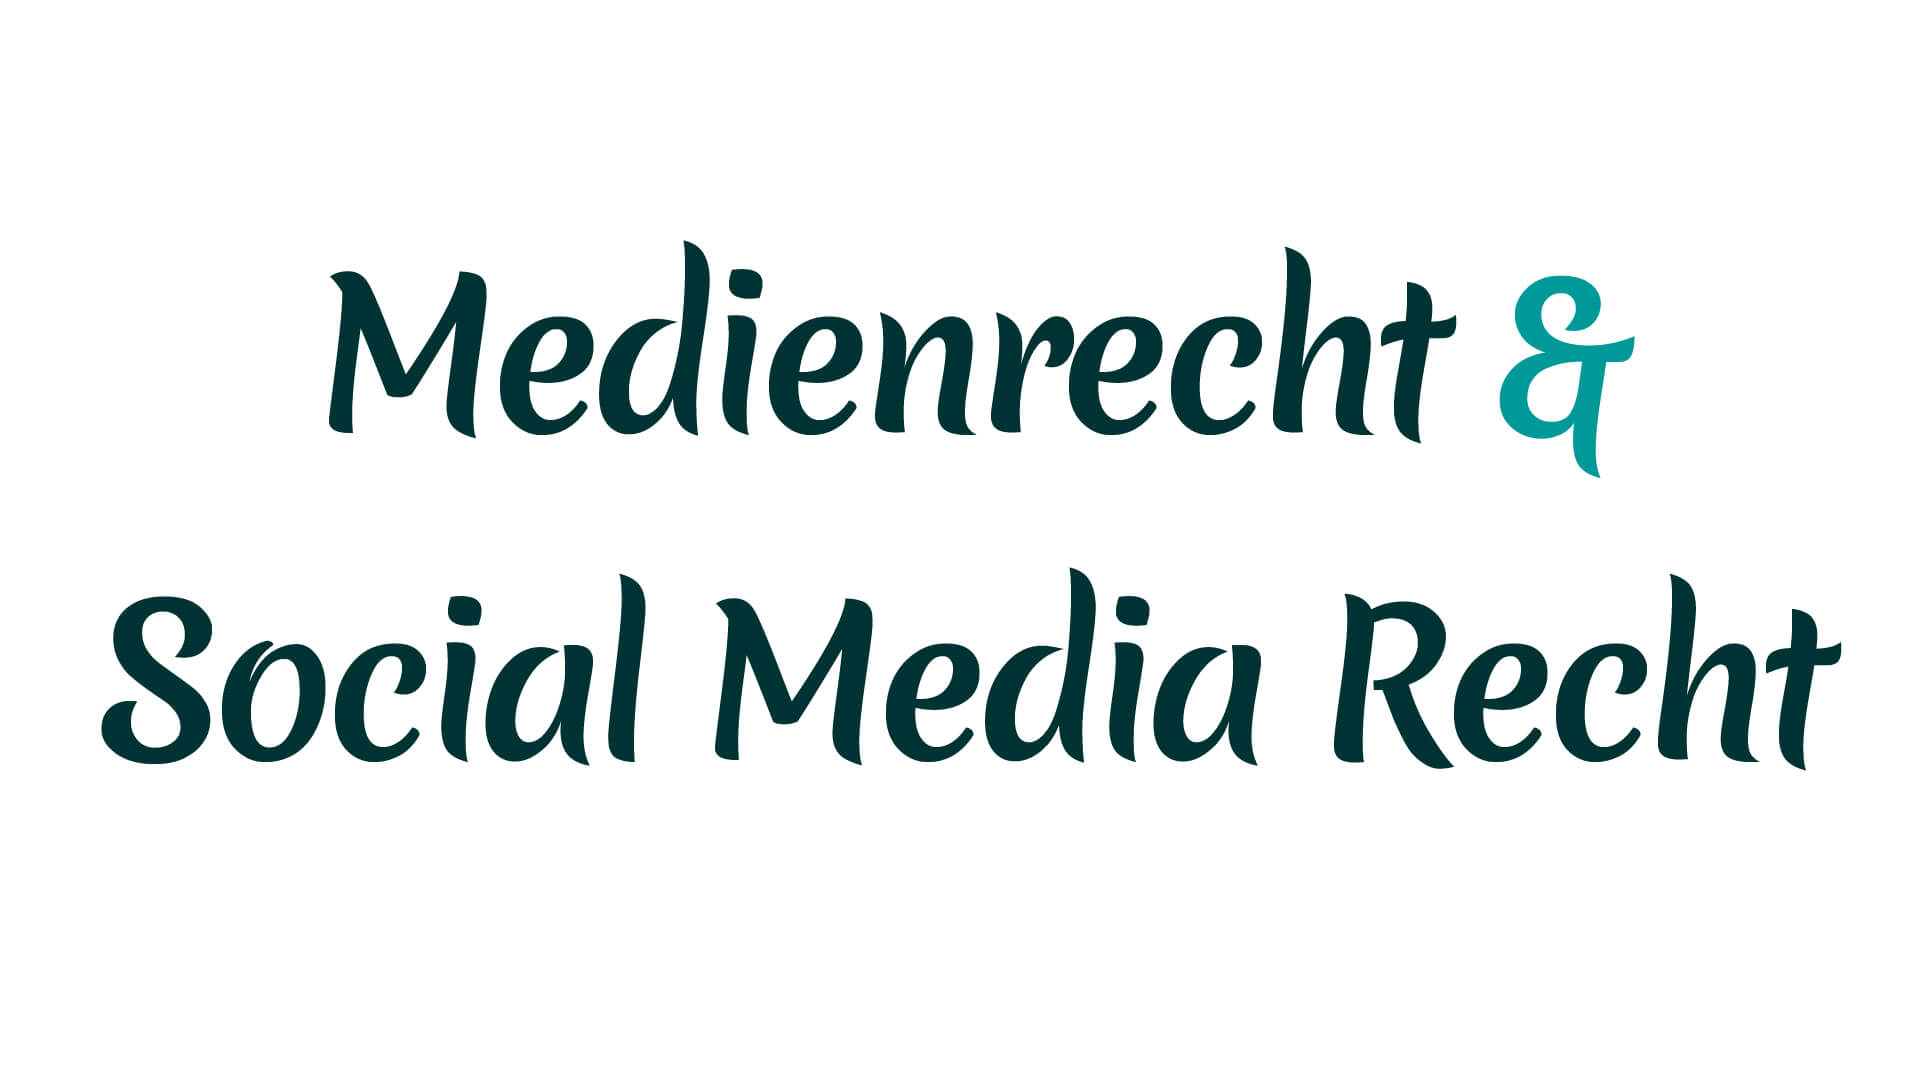 Medienrecht und Social Media Recht mit Heike Mareck